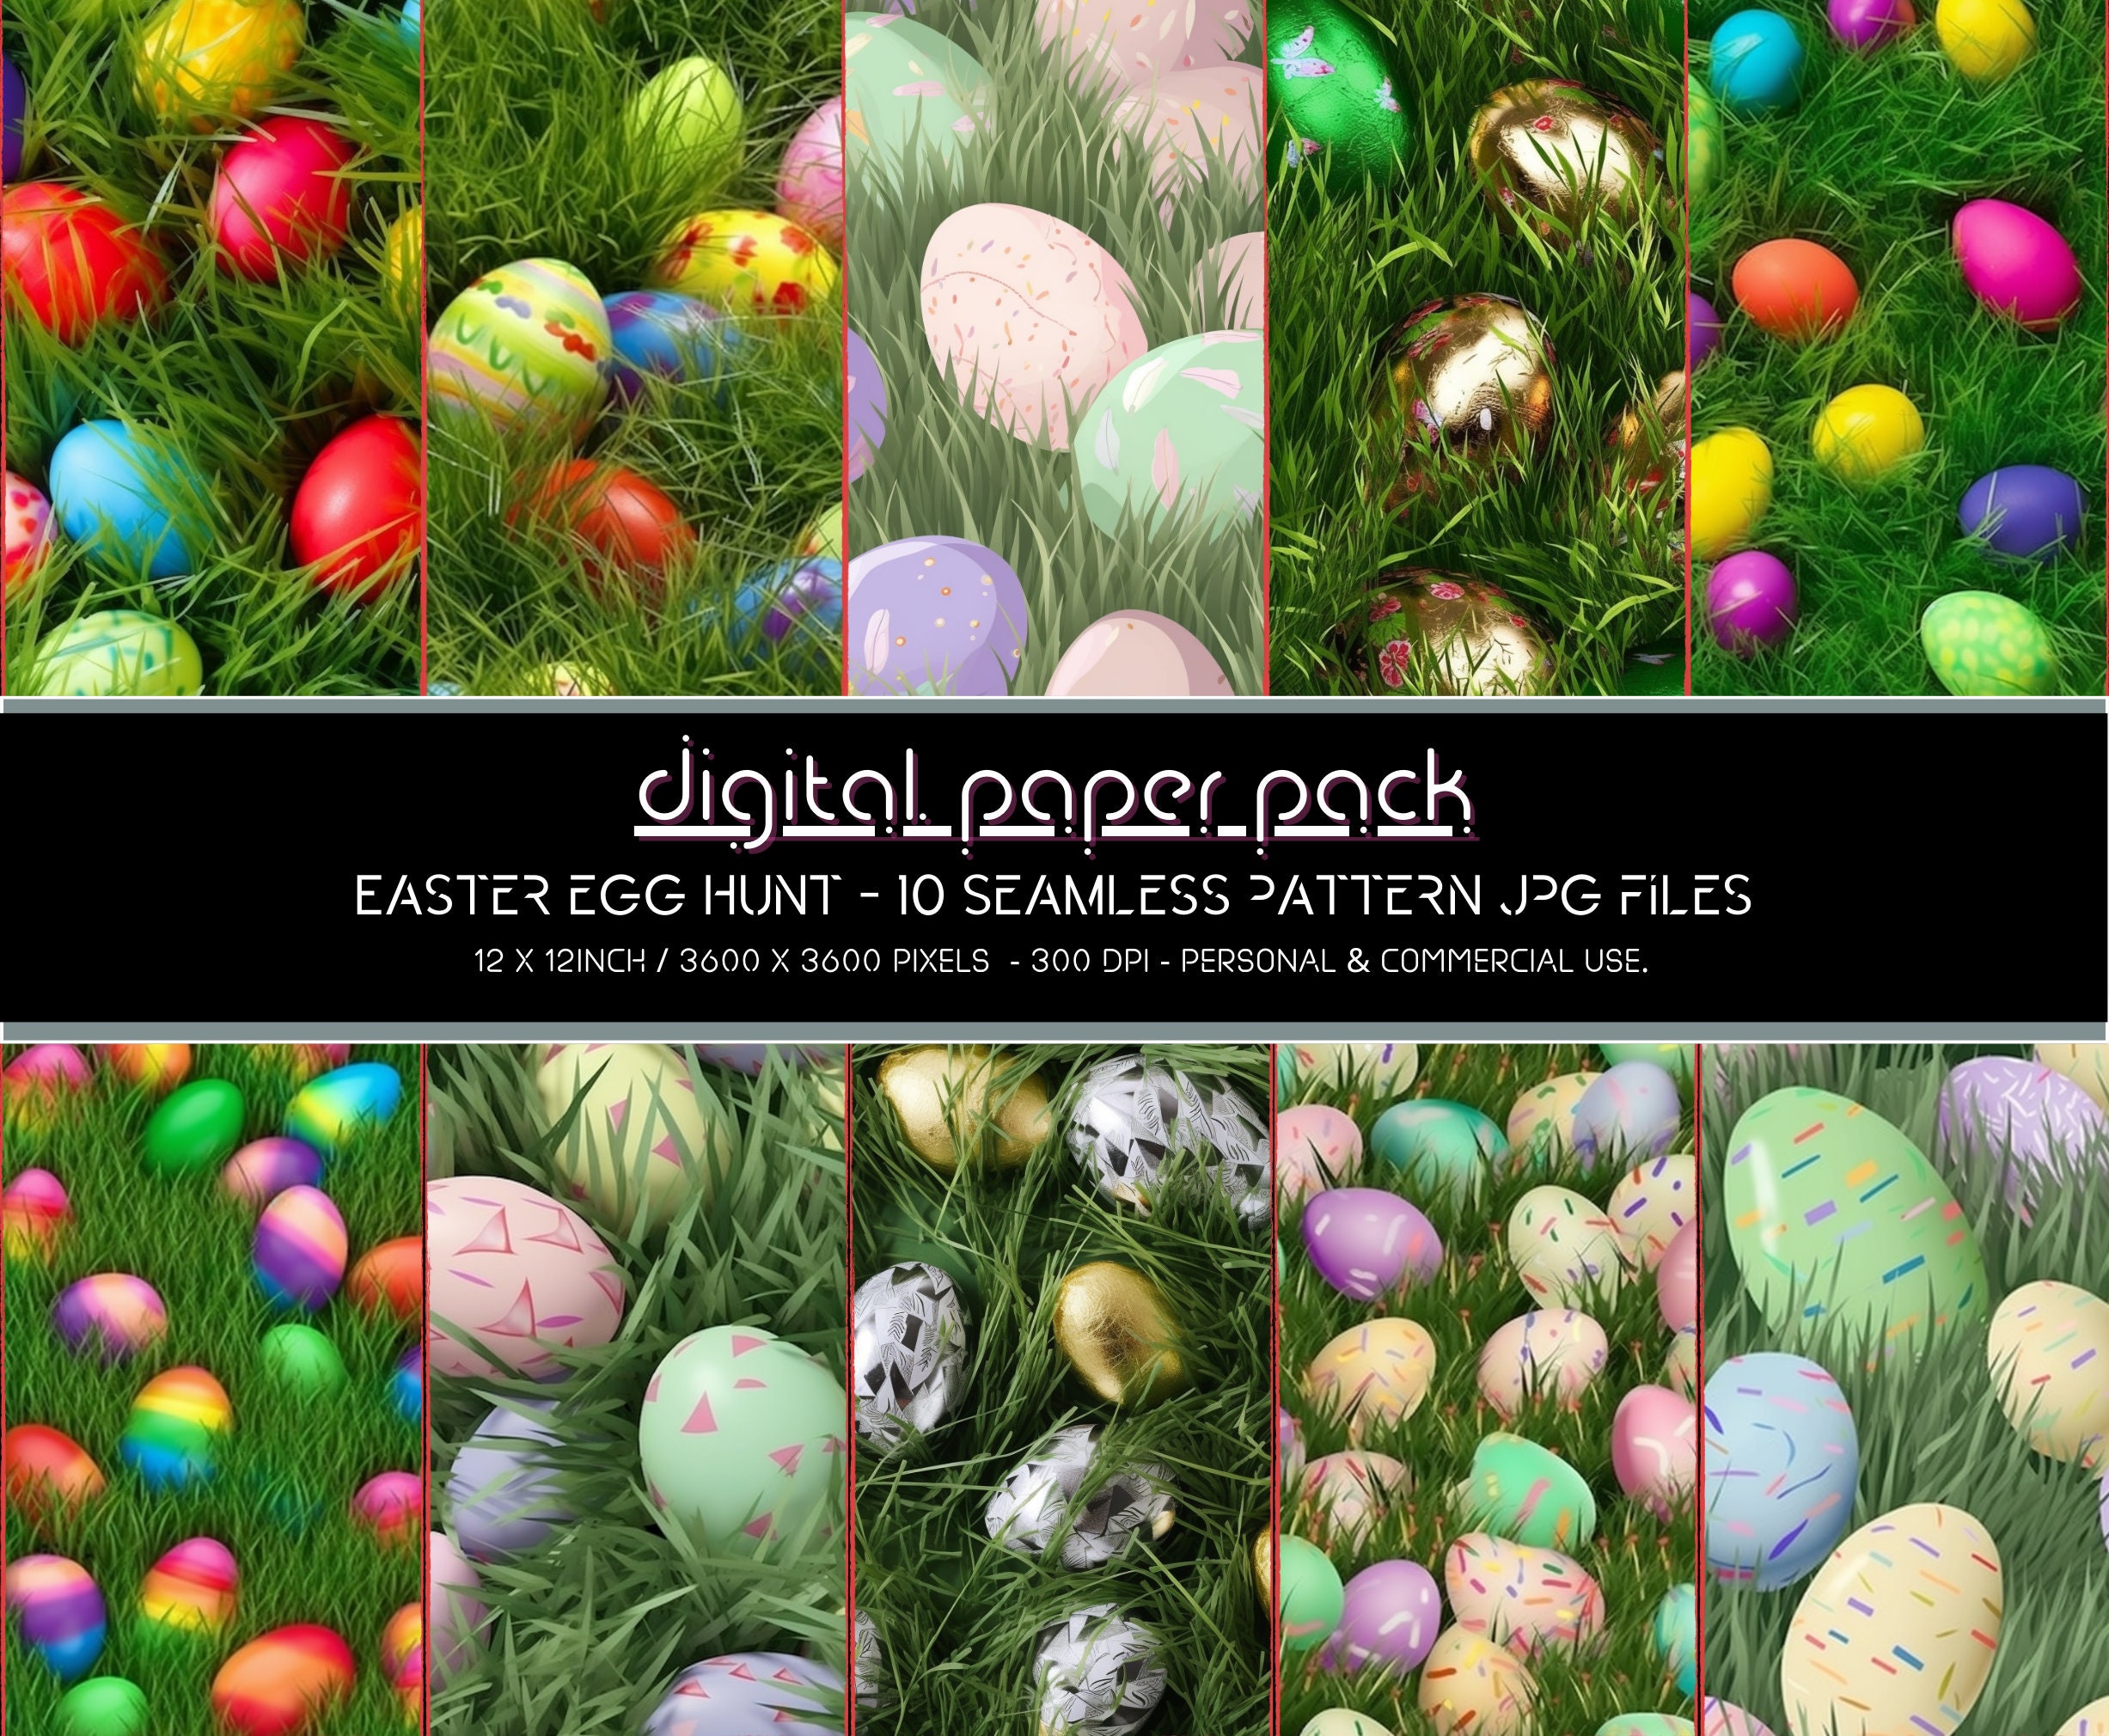 Green Raffia Grass Bundle for Easter Arts and Crafts Easter Eggs Basket  Filler 1/2 lb. Premium Bulk Easter Decorations